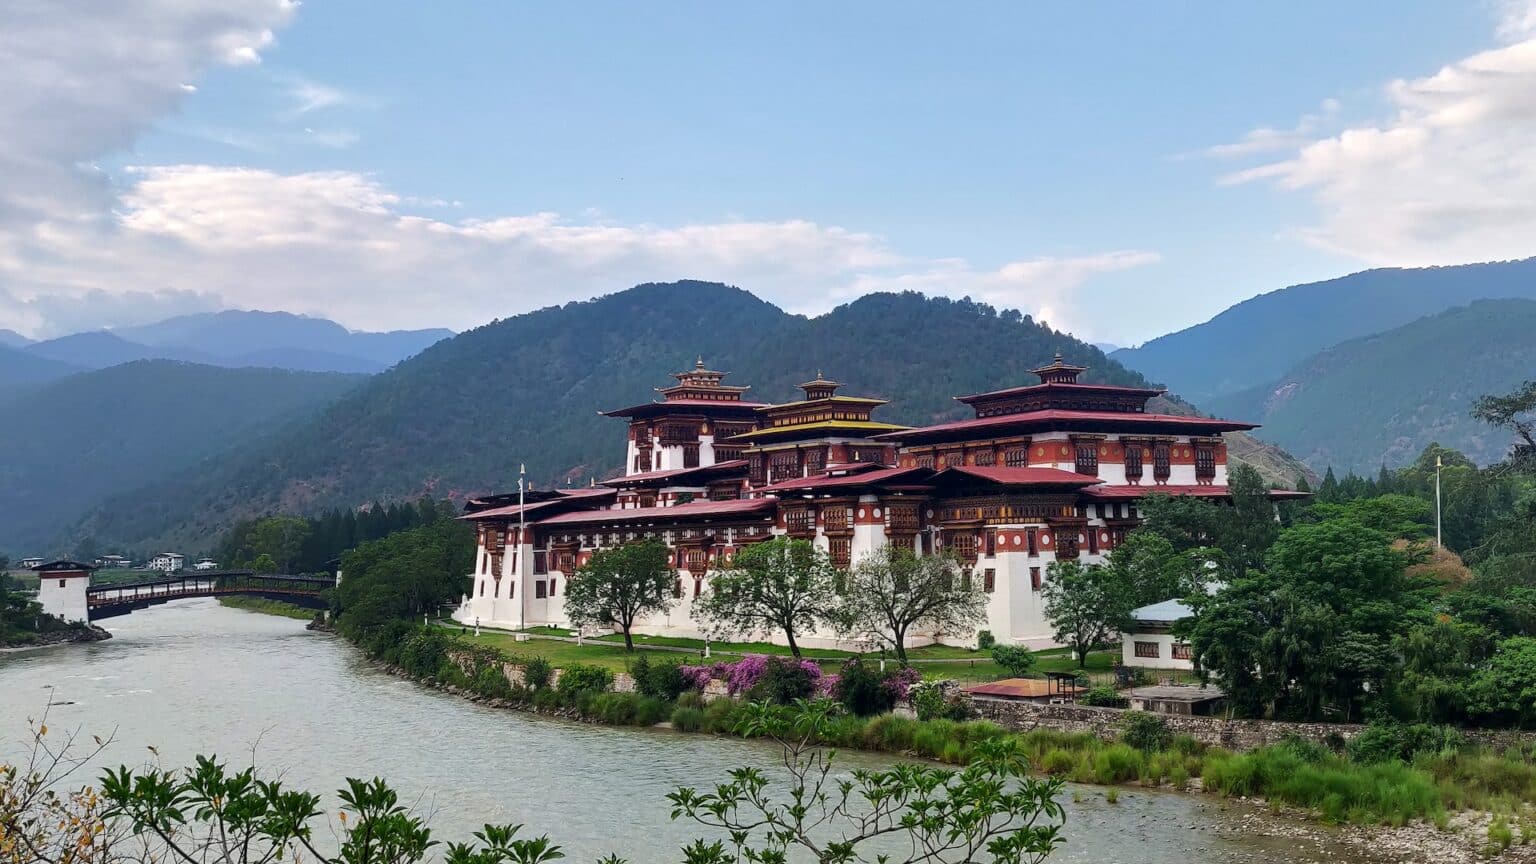 Architecture of the Punakha Dzong-Bhutan.